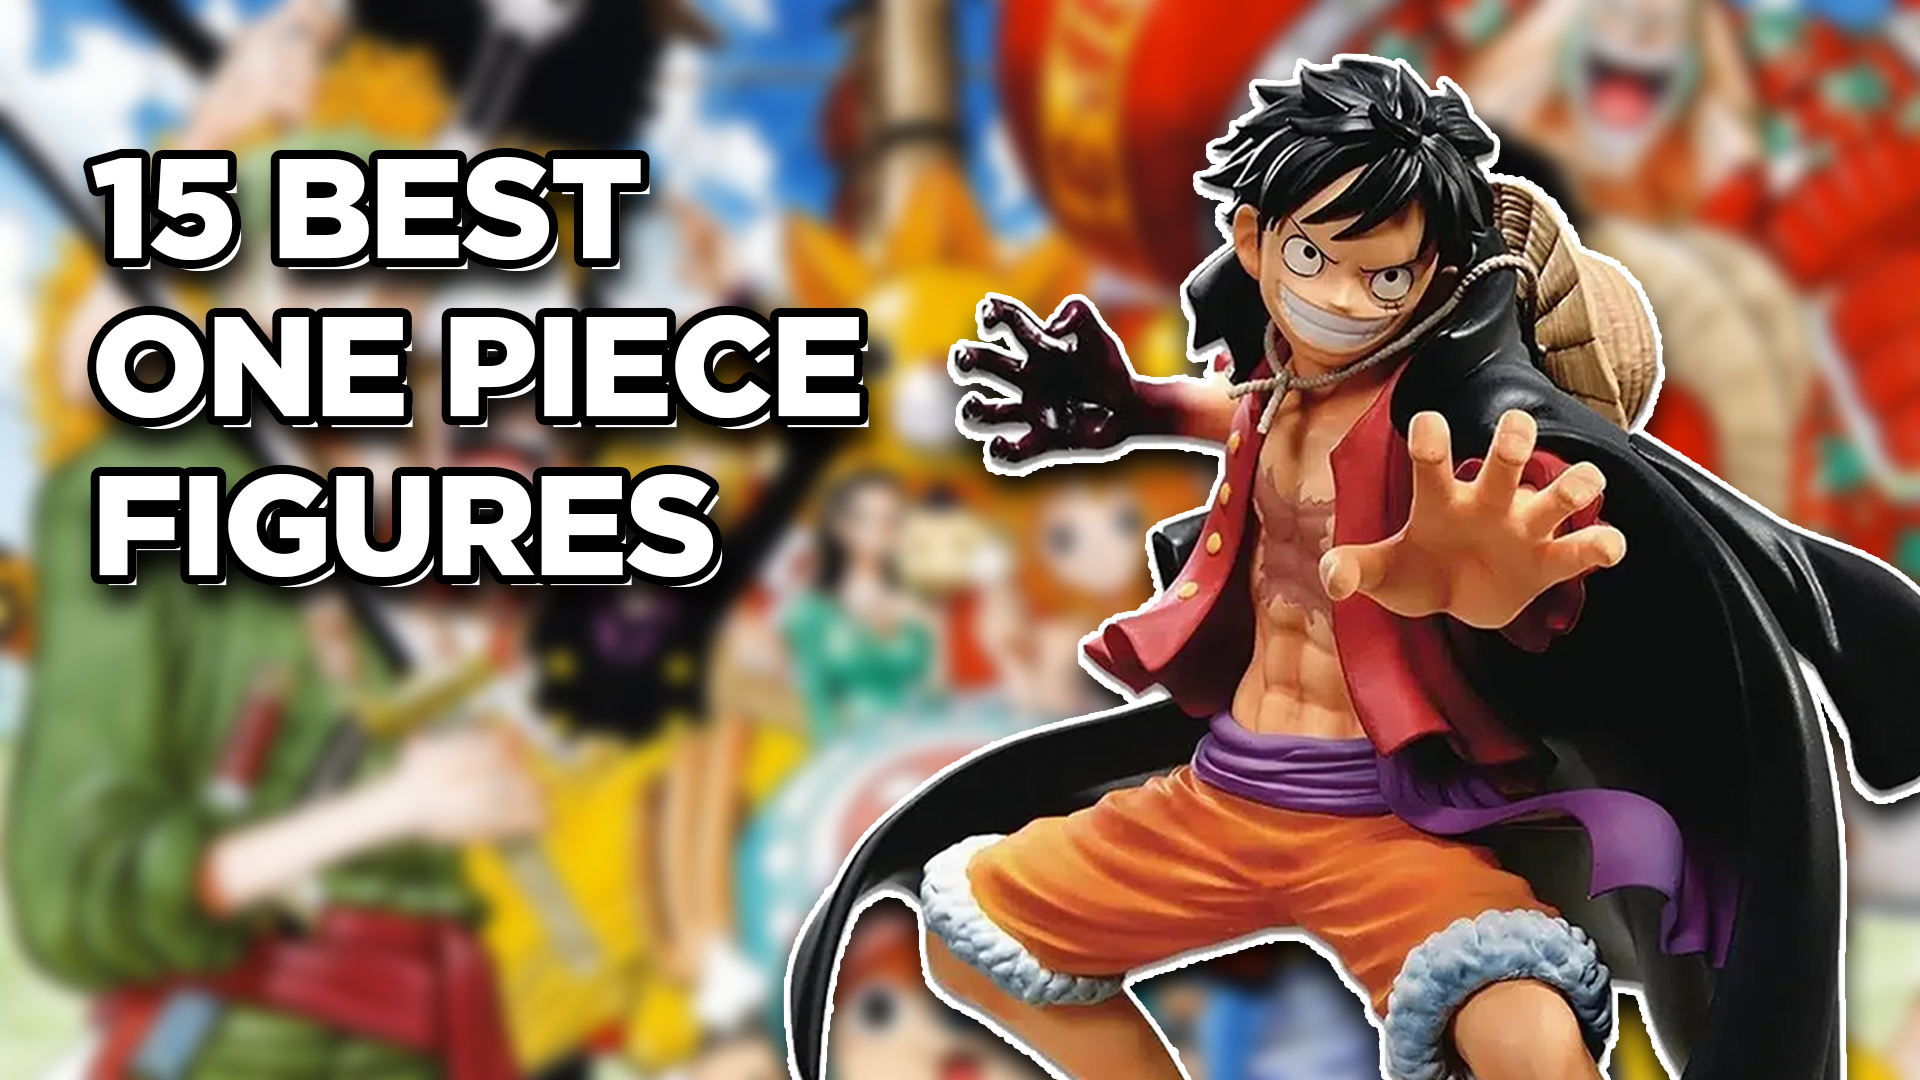 One Piece Best Figure Header